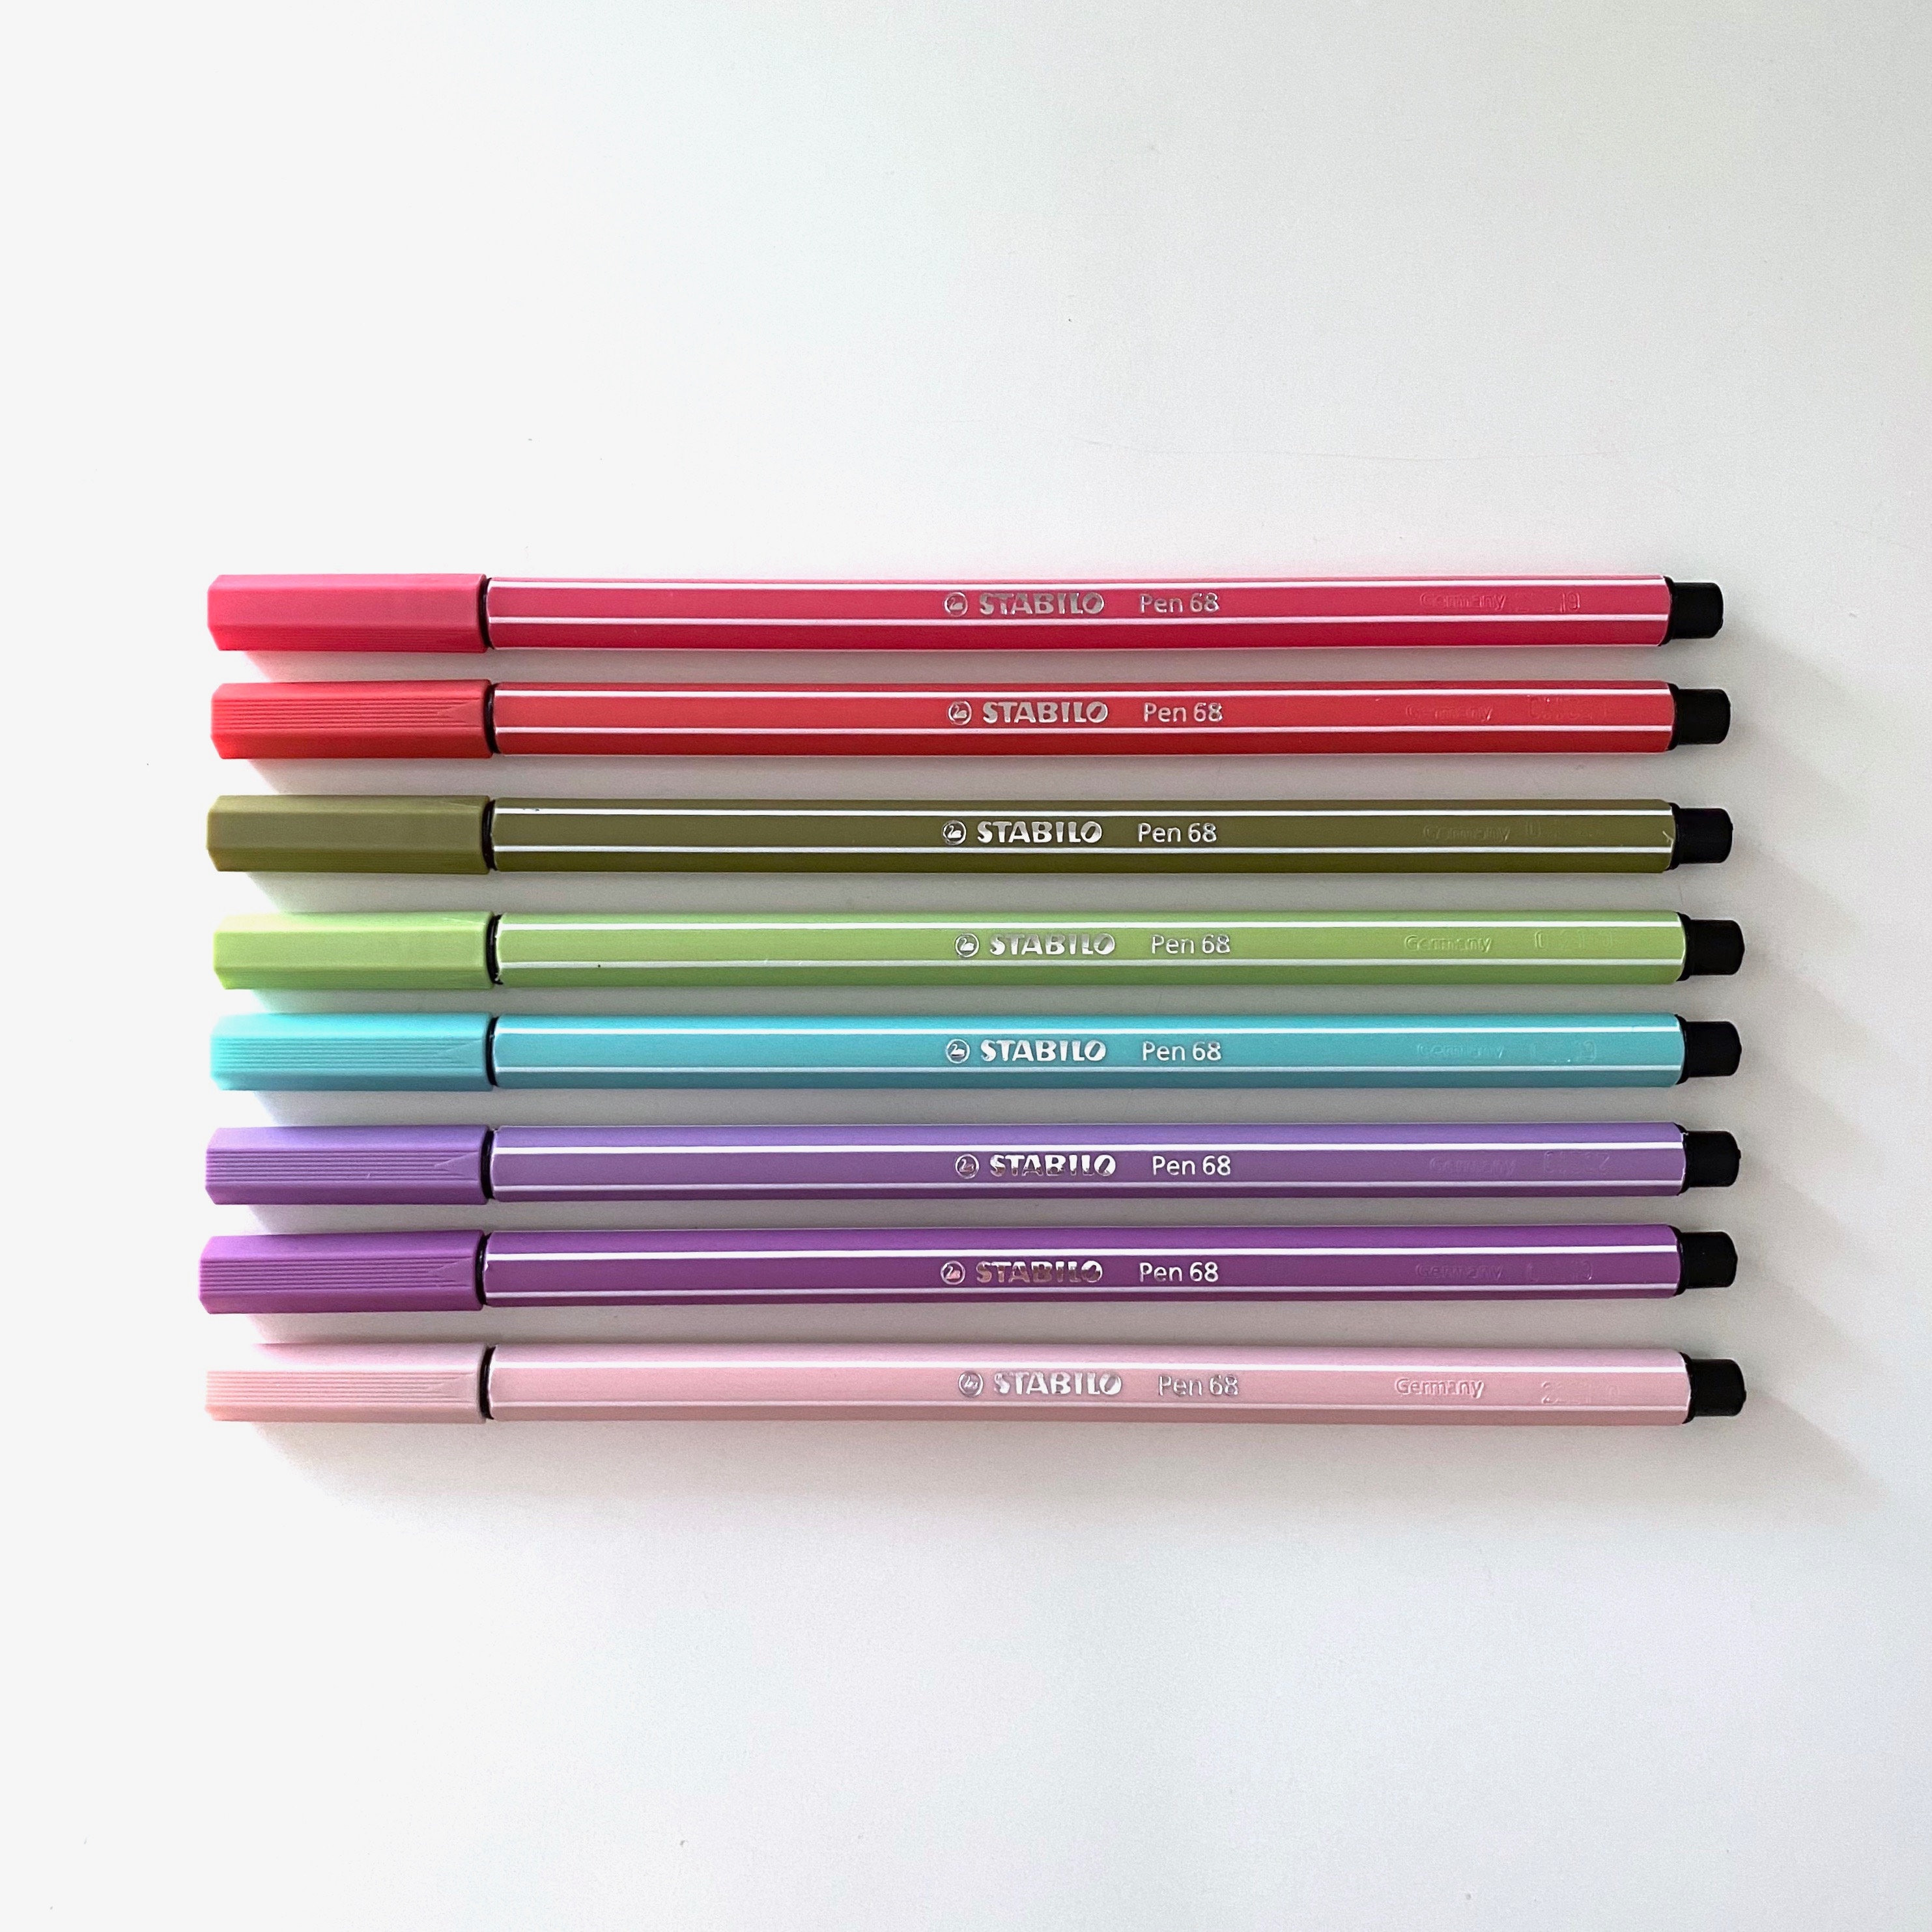 Premium Felt Tip Pen - STABILO Pen 68 - Wallet of 30 - Assorted colors incl  6 Neon